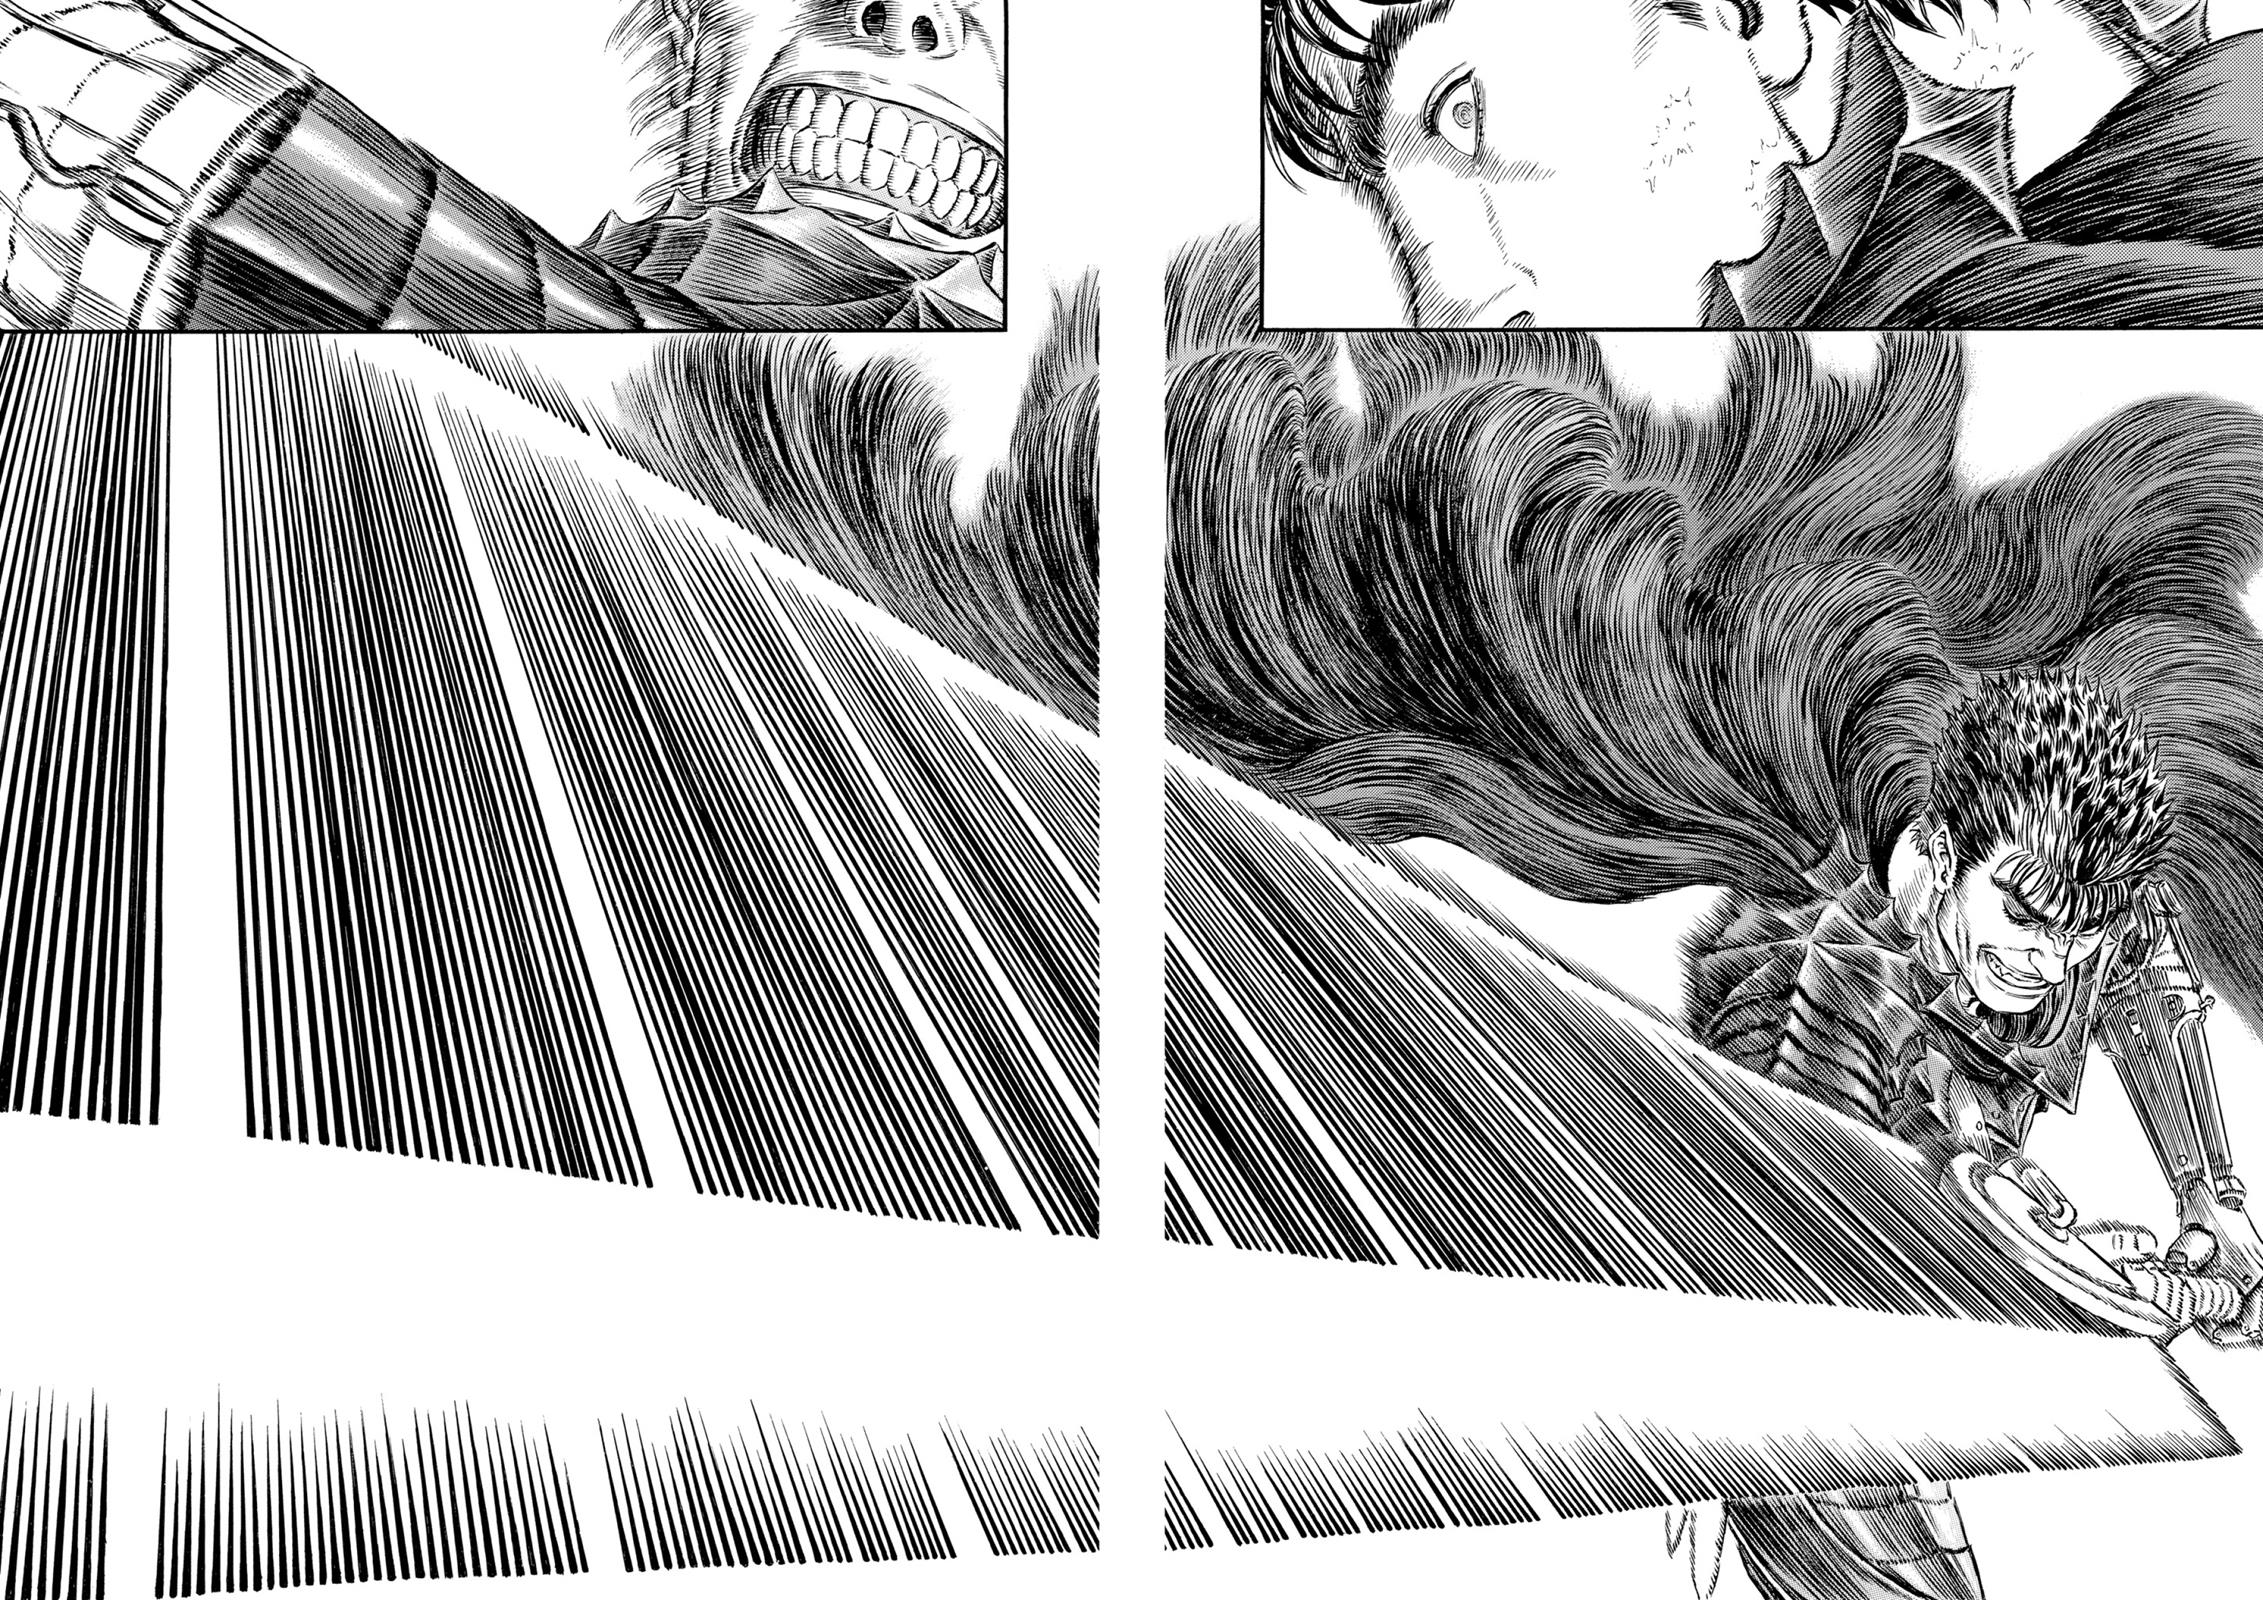 Berserk Manga Chapter 310 image 03